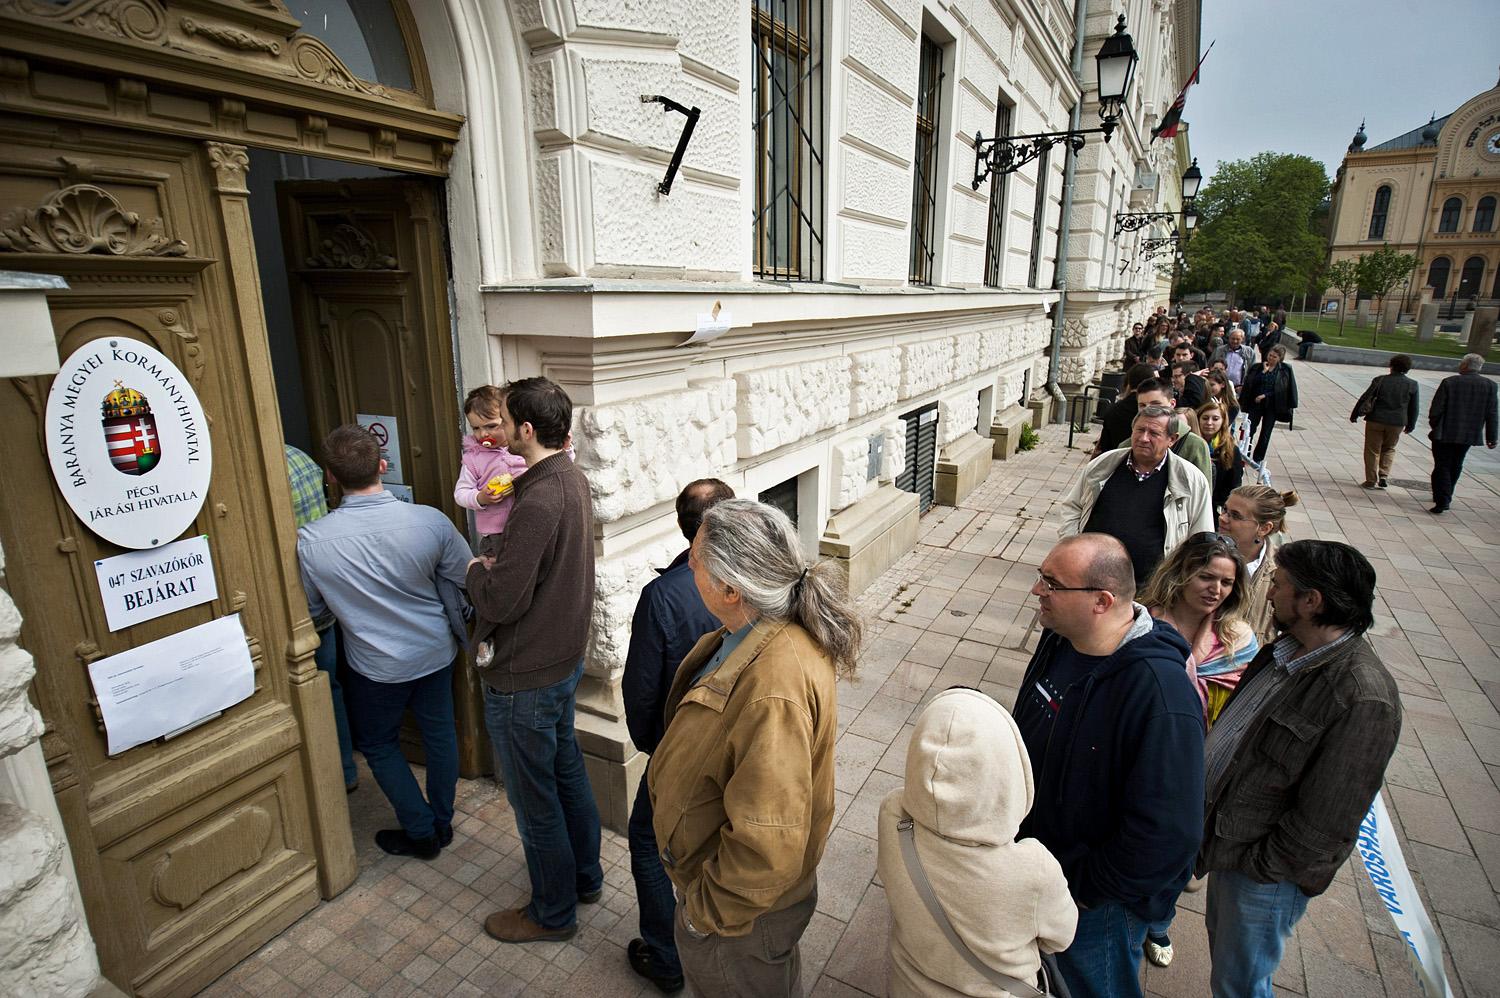 Szavazók várakoznak a pécsi Kossuth téren